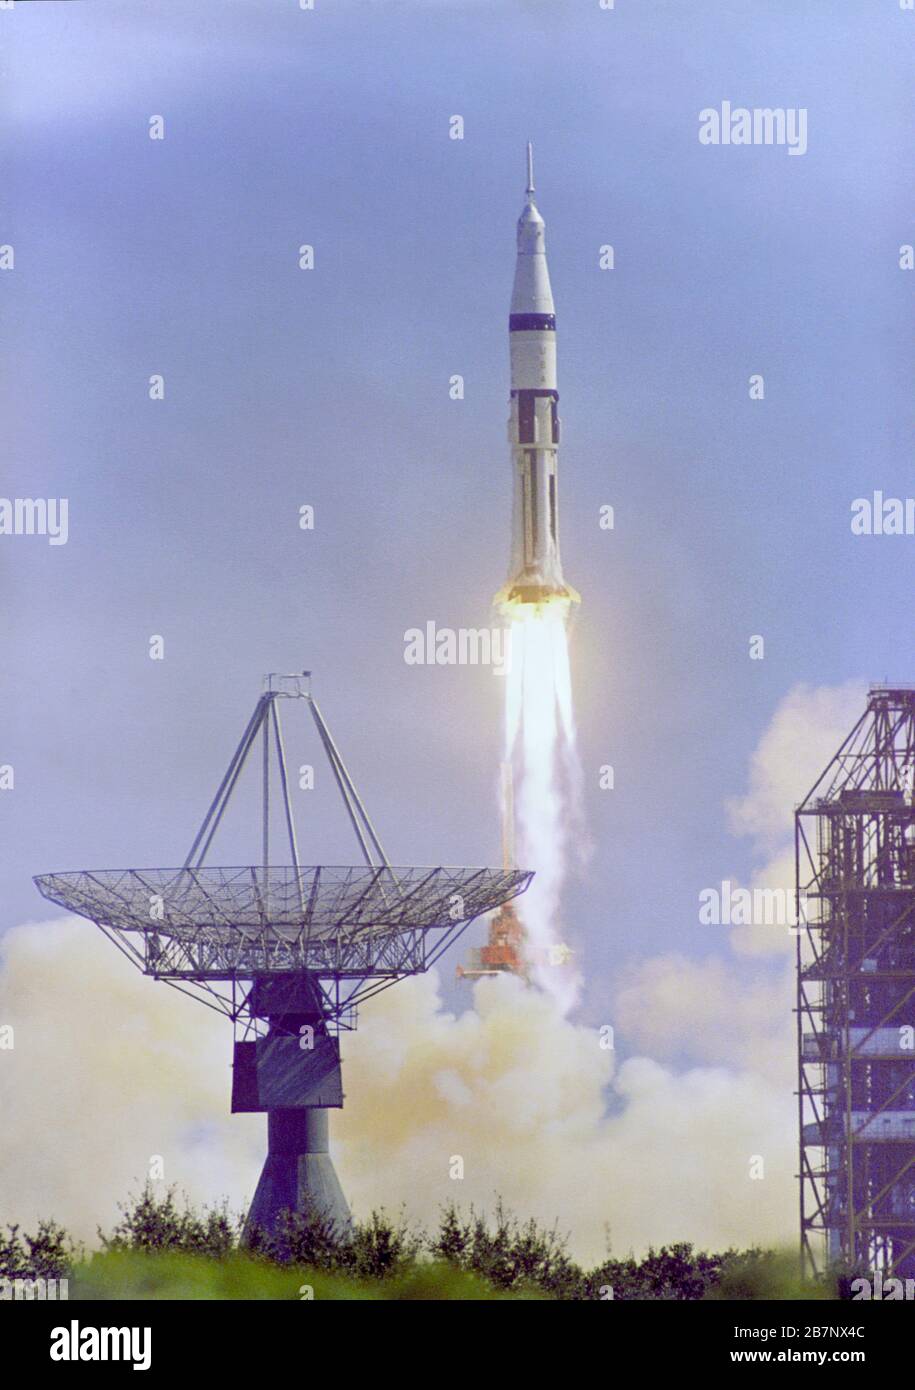 Apollo 7 - NASA, 1968. L'Apollo 7 Saturn IB è stato lanciato dal Kennedy Space Center's Launch Complex 34 alle 11:03 del 11 ottobre 1968. Questa immagine mostra l'antenna di tracciamento a sinistra e una struttura di servizio PAD a destra. Foto Stock